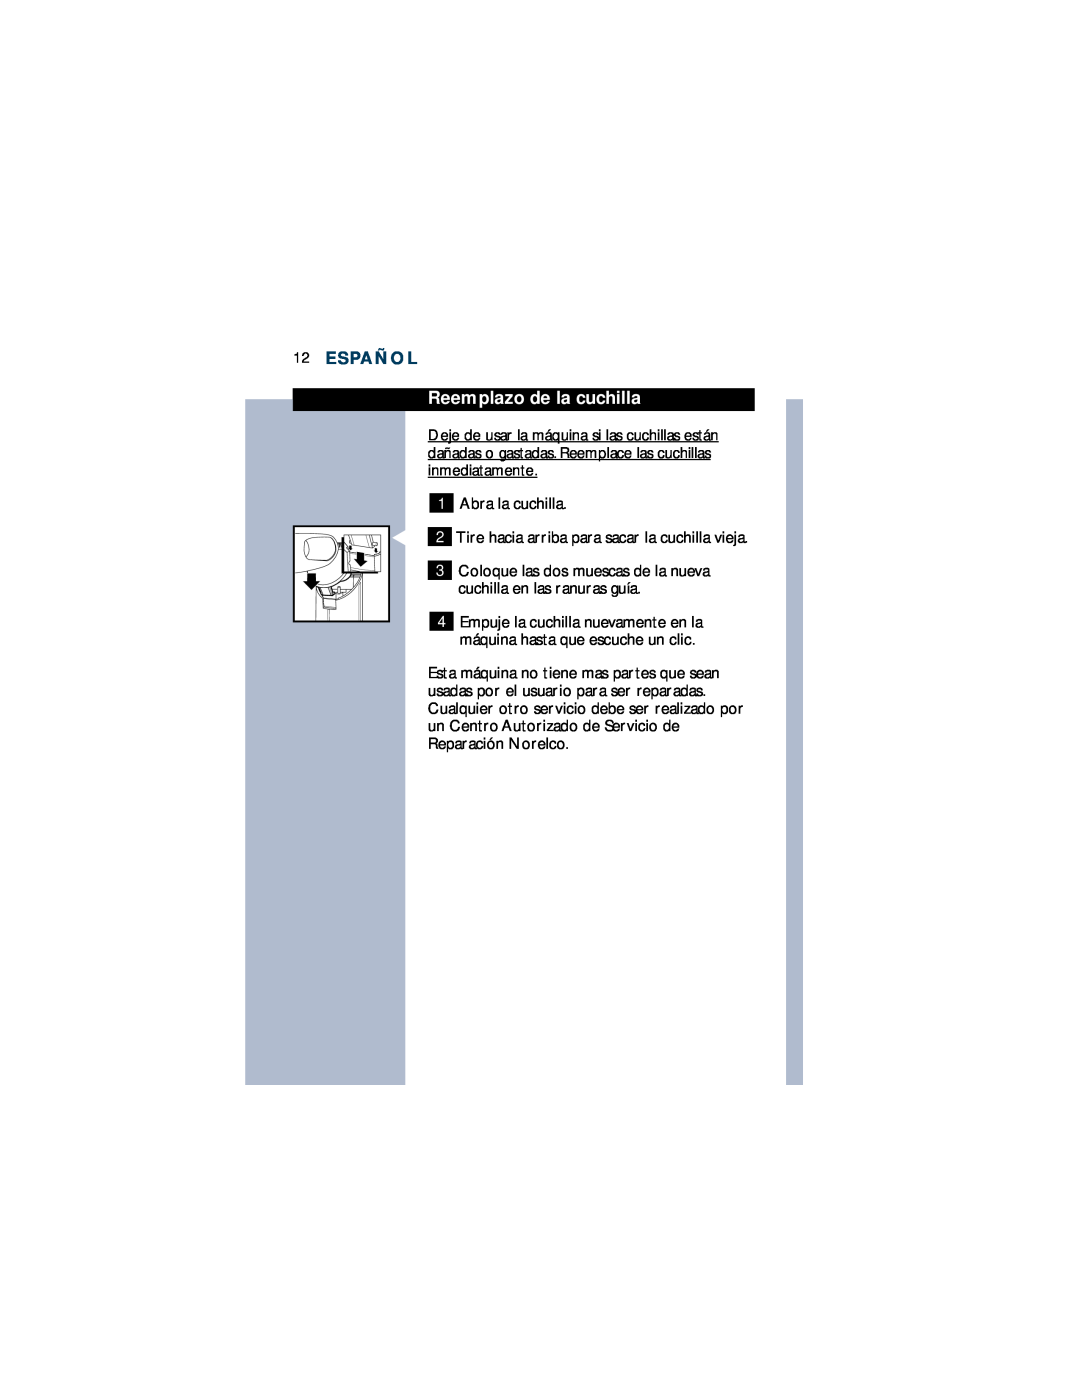 Philips T660 manual Reemplazo de la cuchilla, Español 